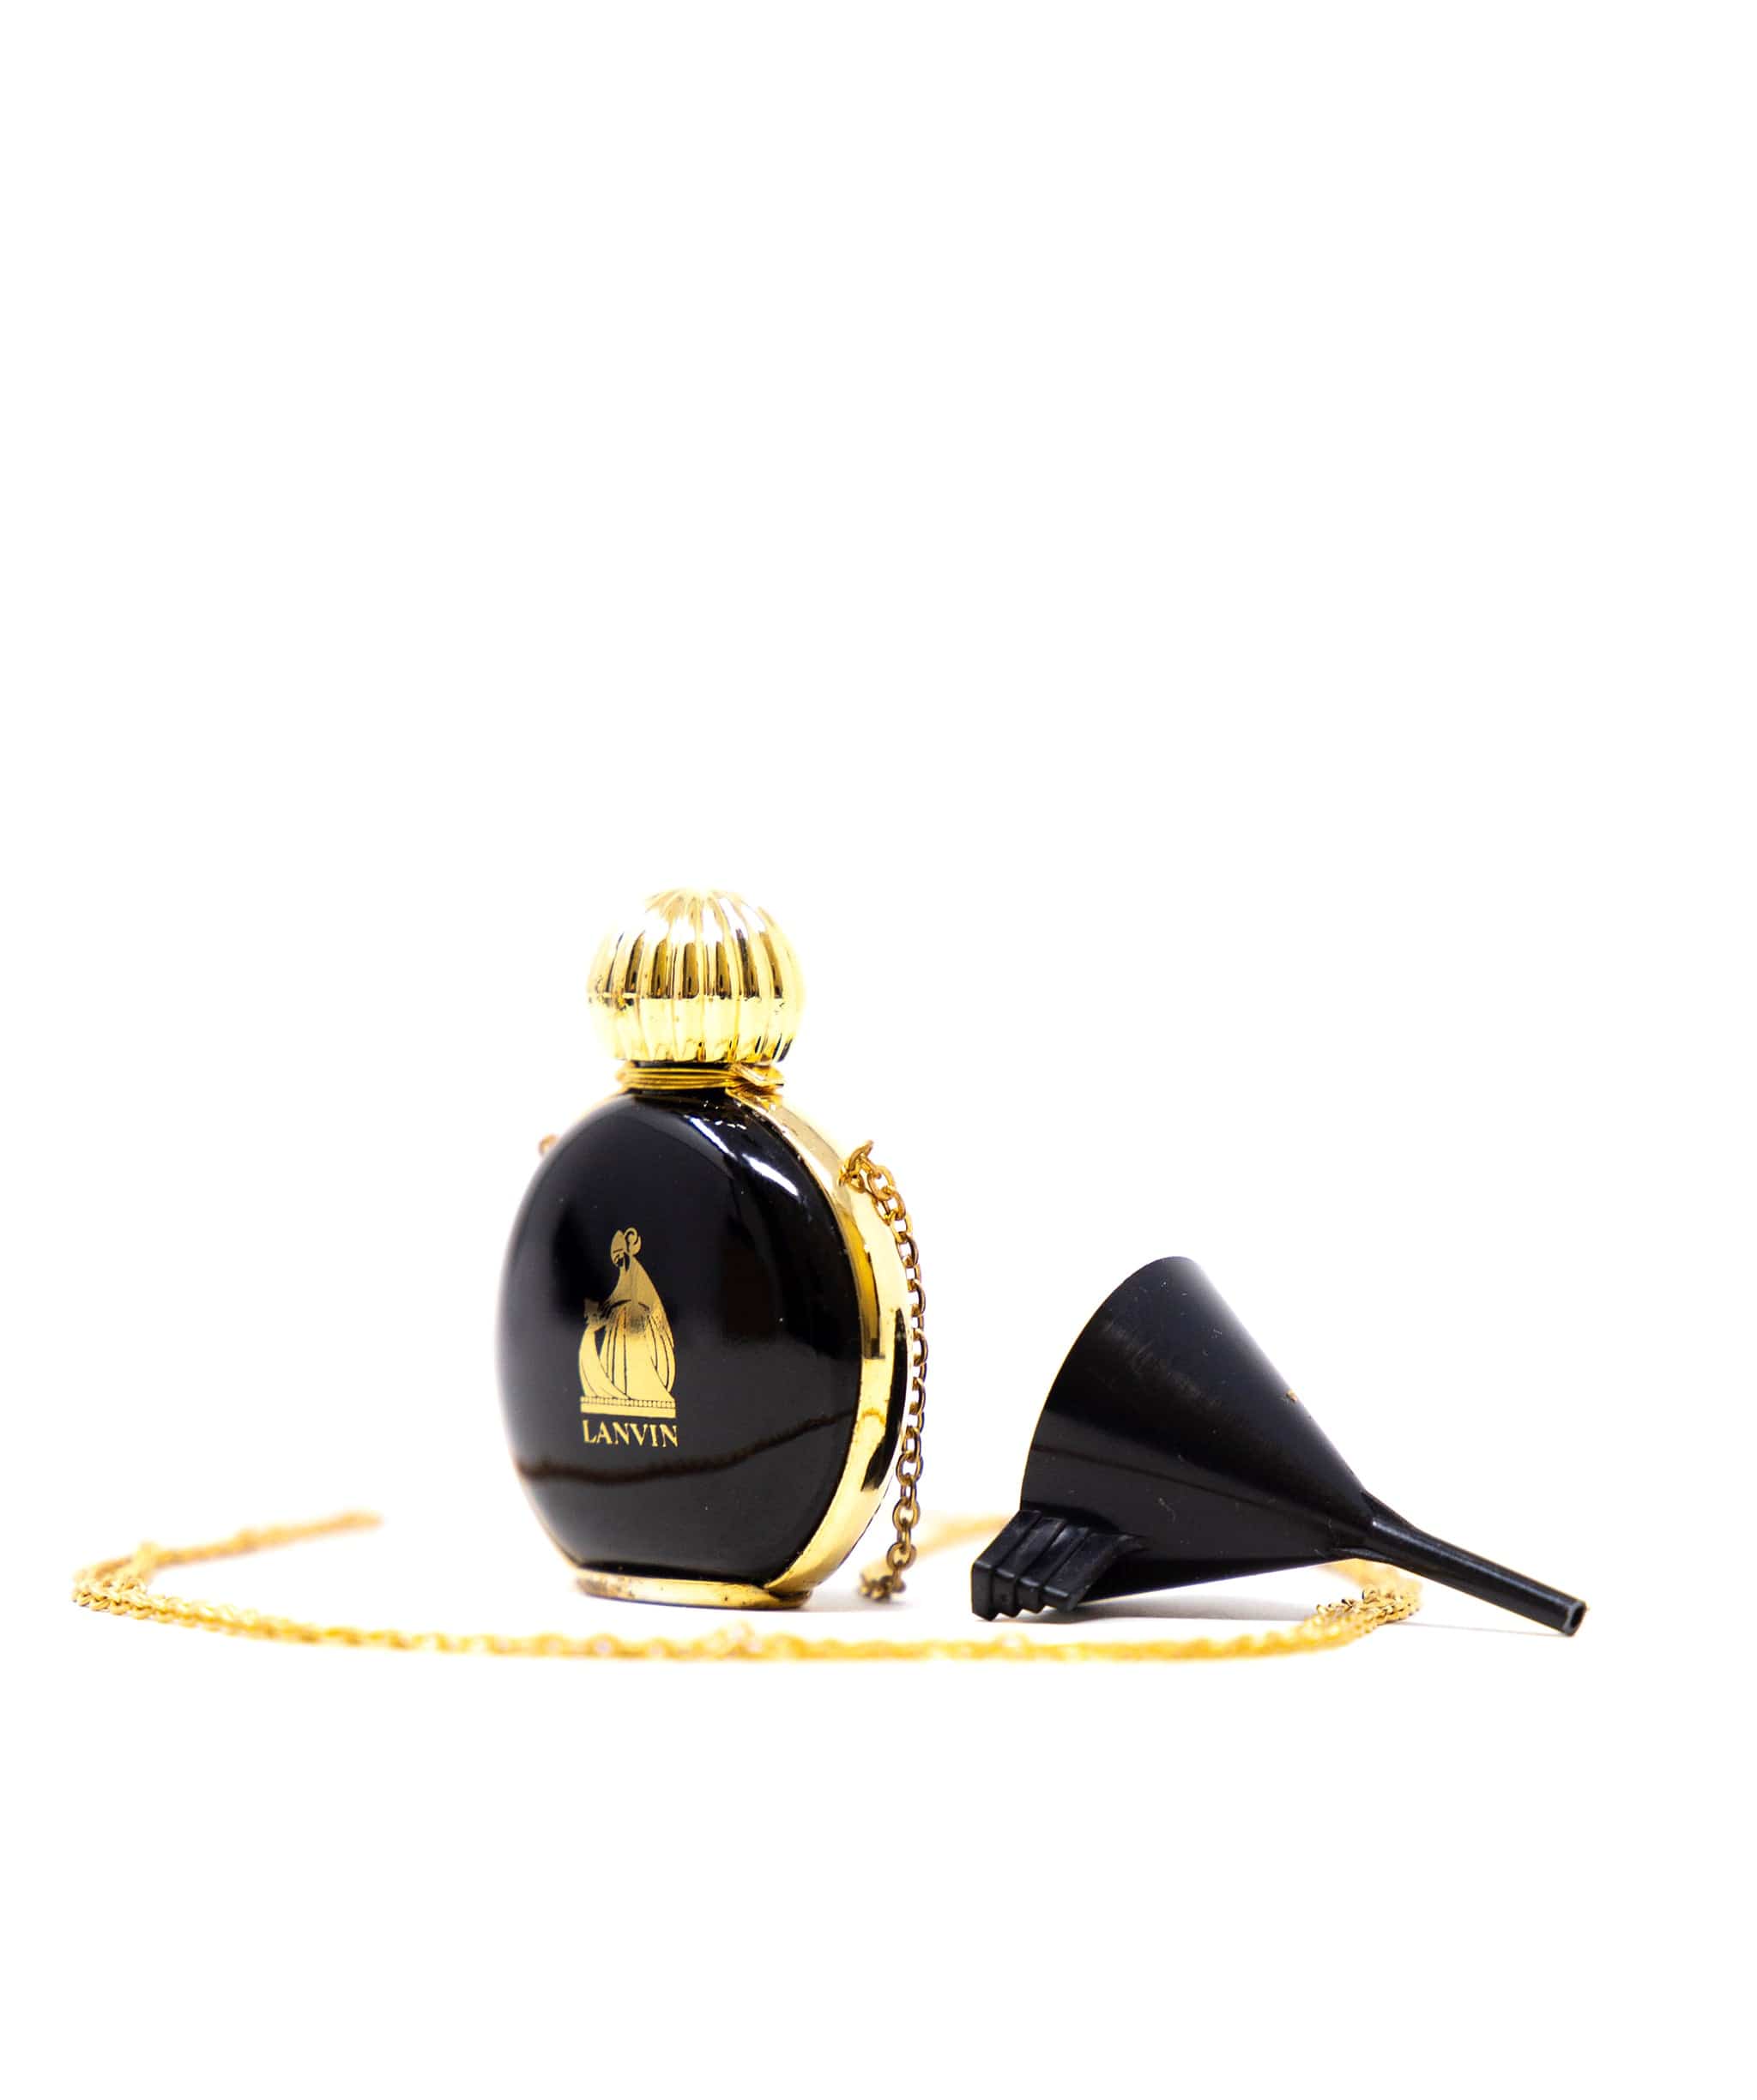 Lanvin Lanvin Vintage Arpege Perfume Bottle Necklace AWC1211